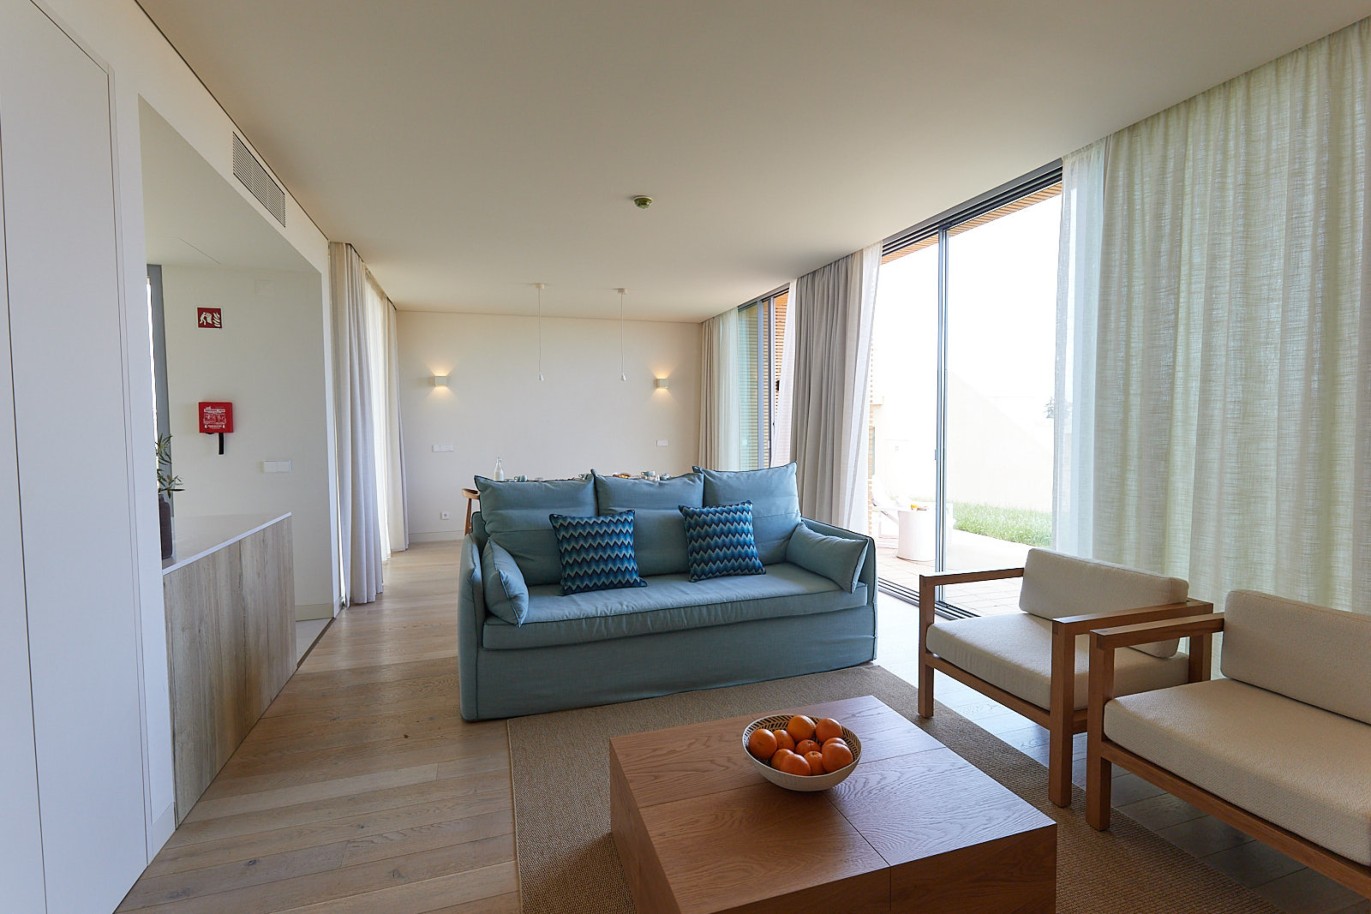 3 bedroom flat in resort, for sale in Porches, Algarve_230742